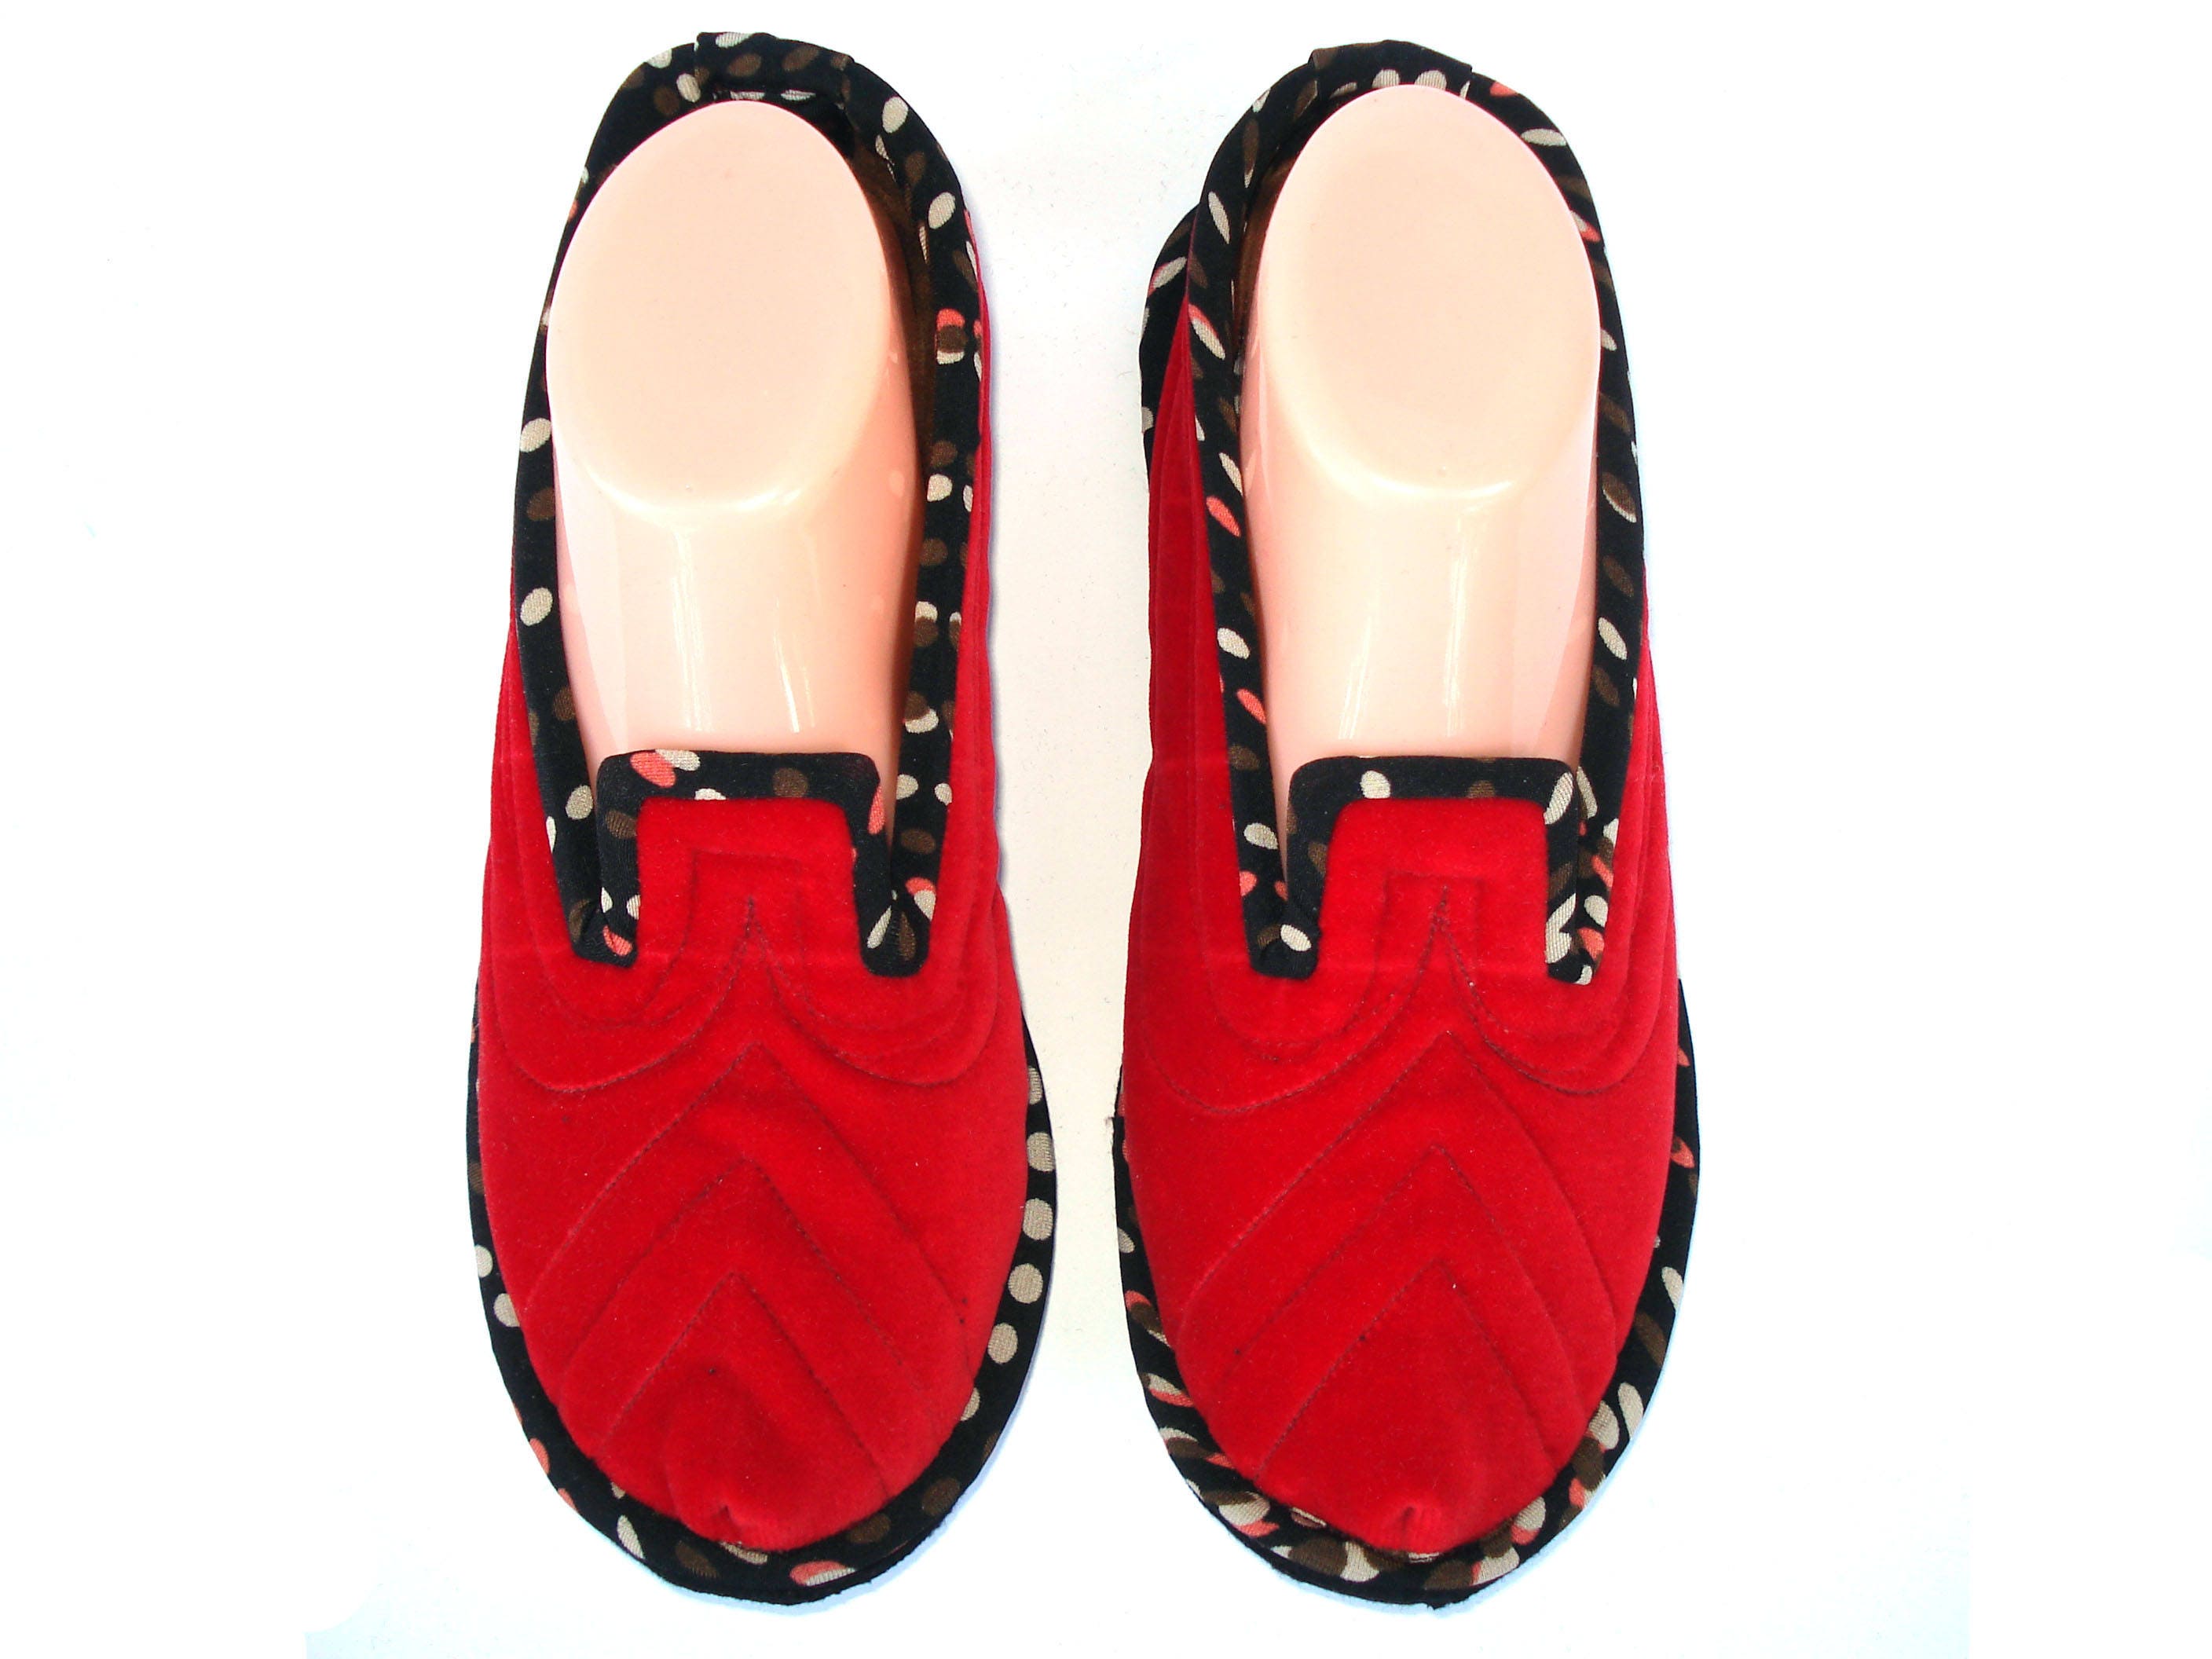 Velvet House Slippers for Women Woolen Home Shoes Warm - Etsy